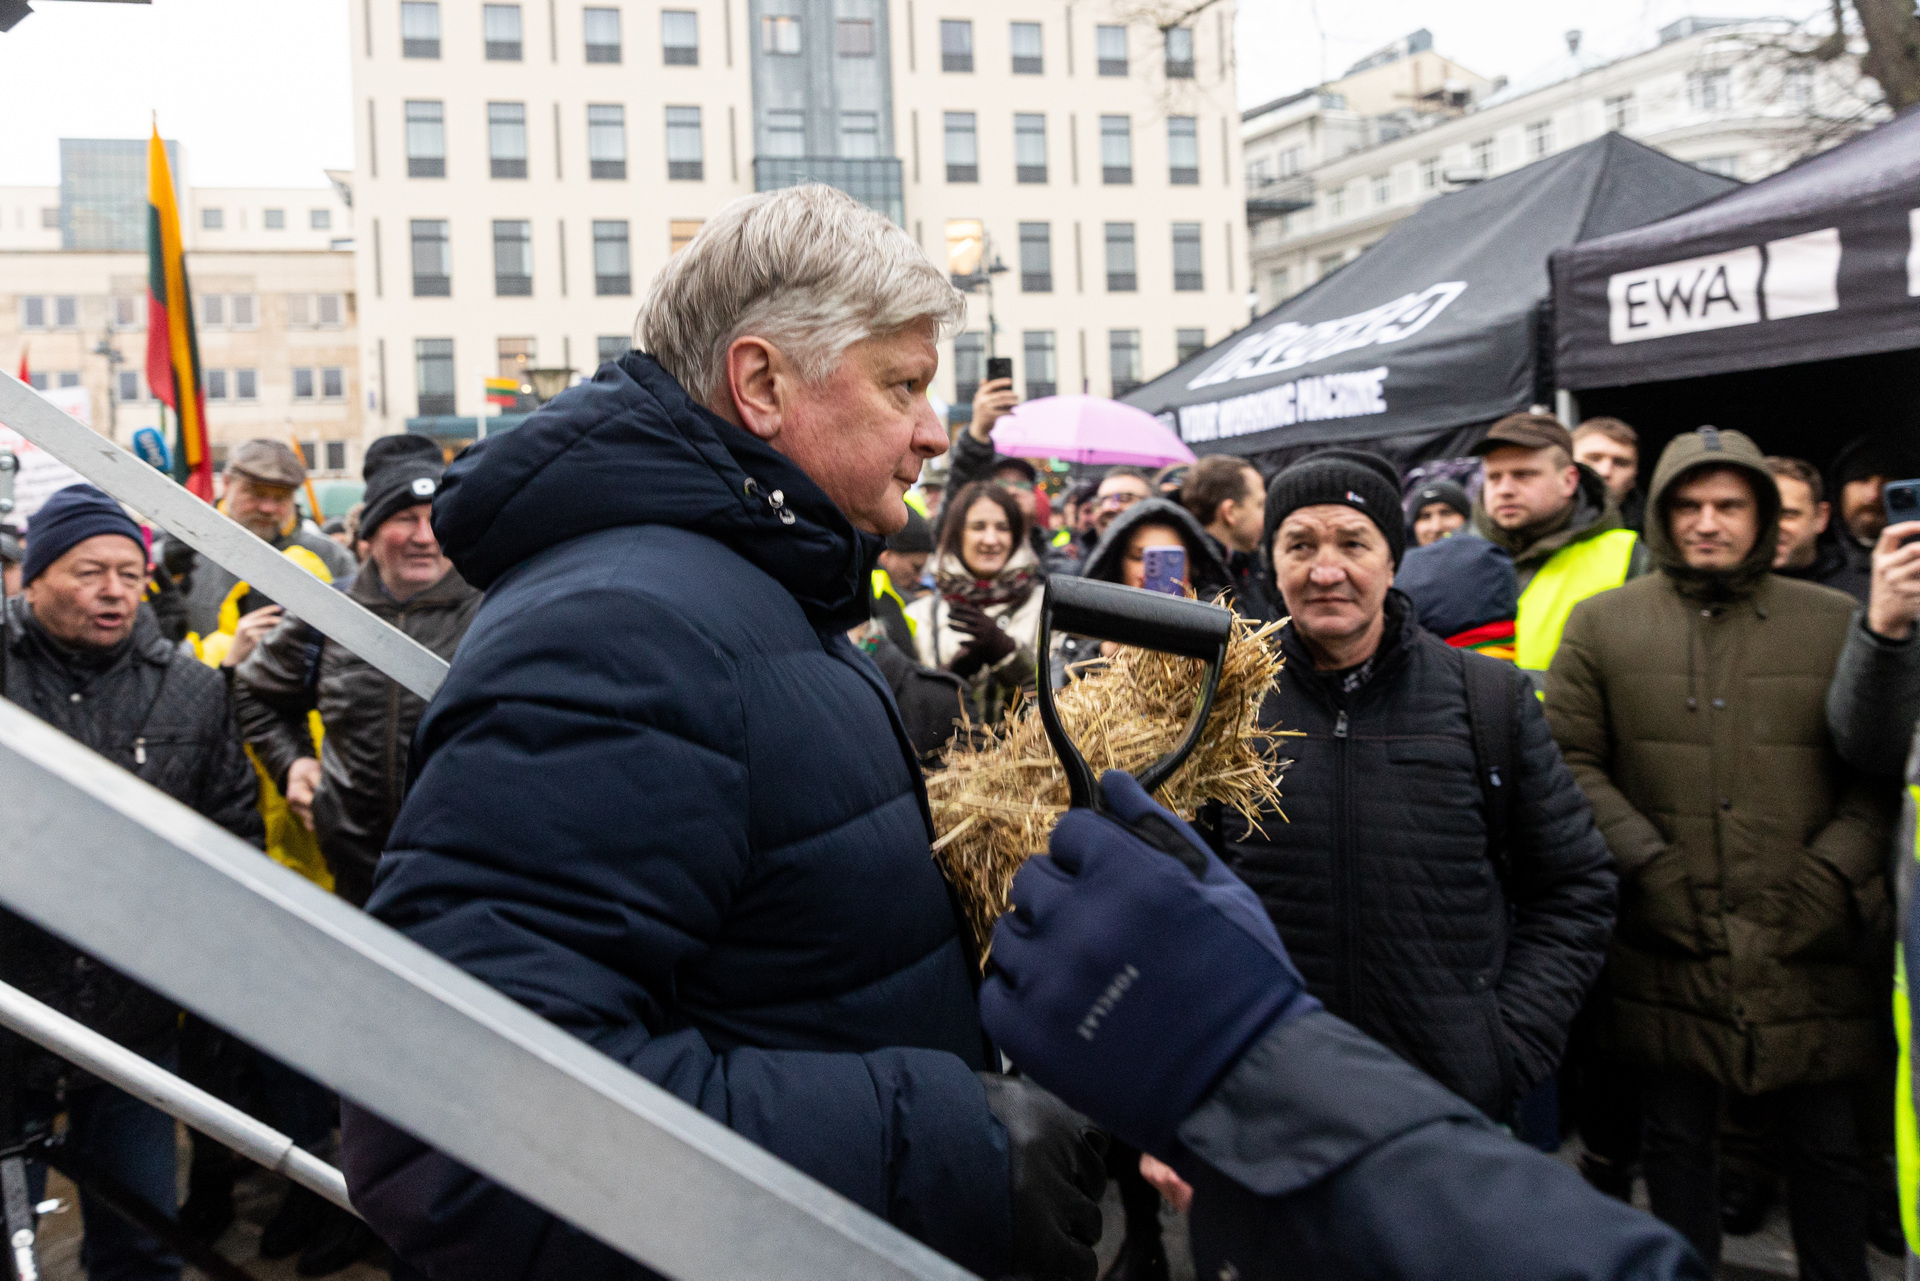 Протесты фермеров, бюджет столицы в размере 1,4 млрд евро, церемония поднятия флага в честь 701-летия Вильнюса и другие новости